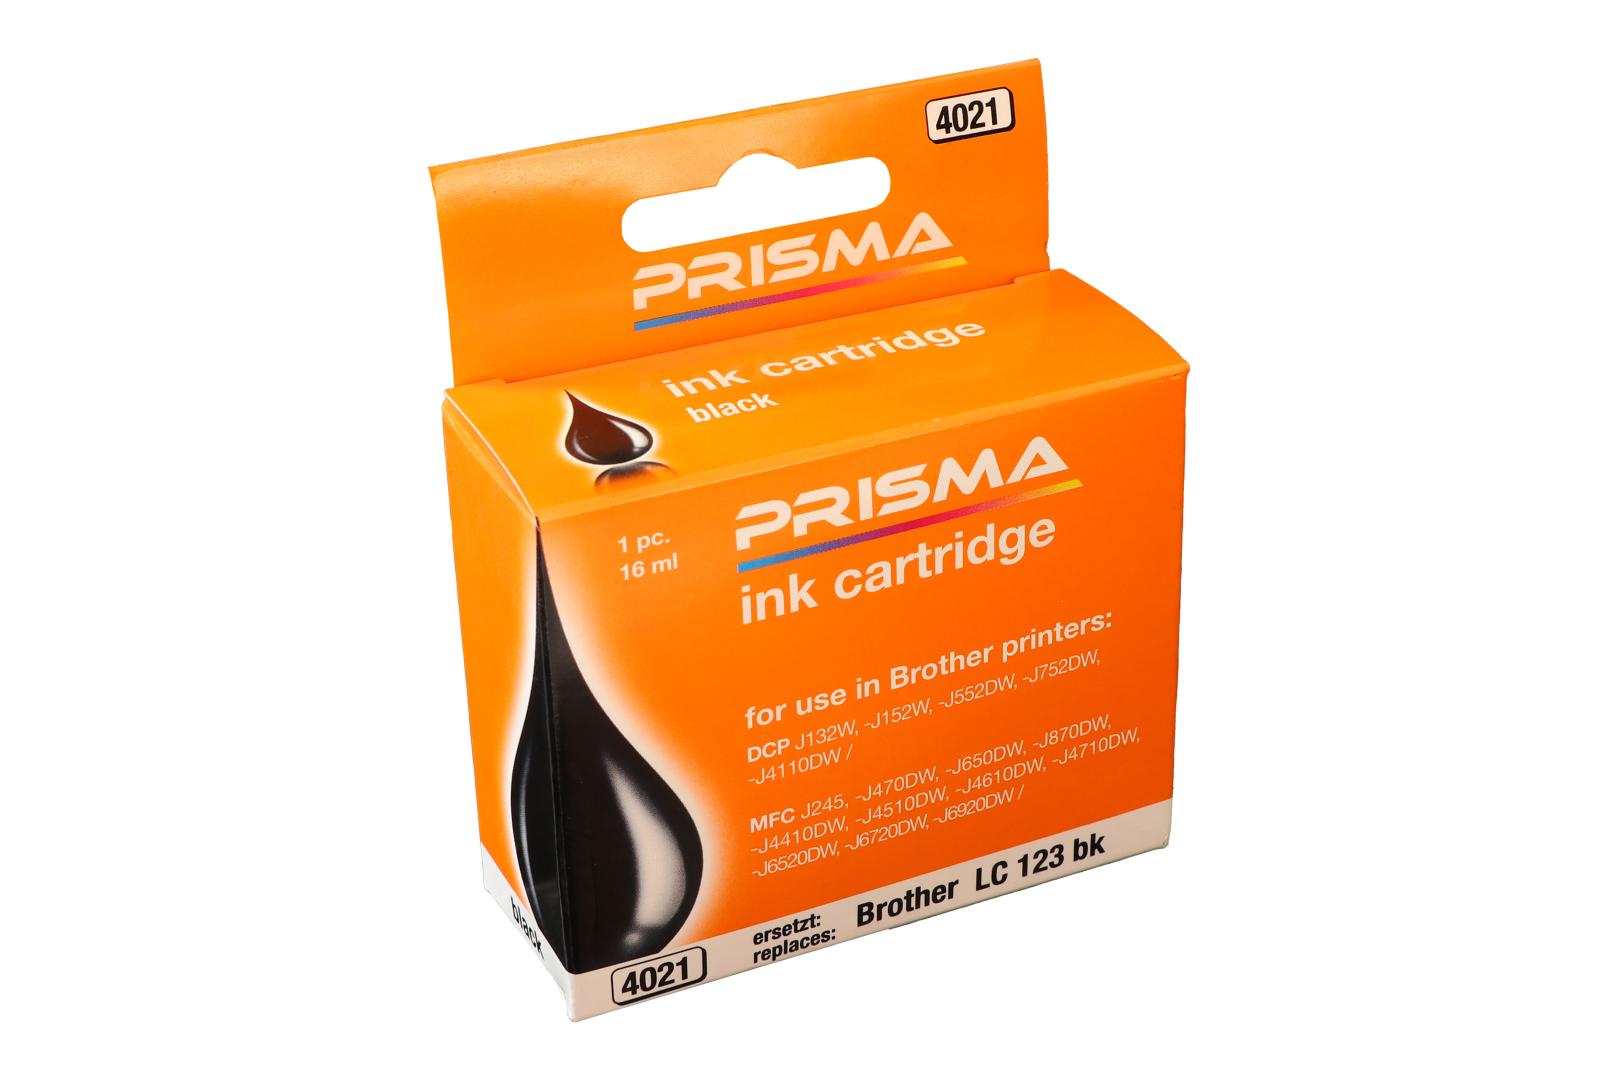 PRISMA 4021 Druckerpatrone für Brother Tintenstrahldrucker, schwarz, 16 ml